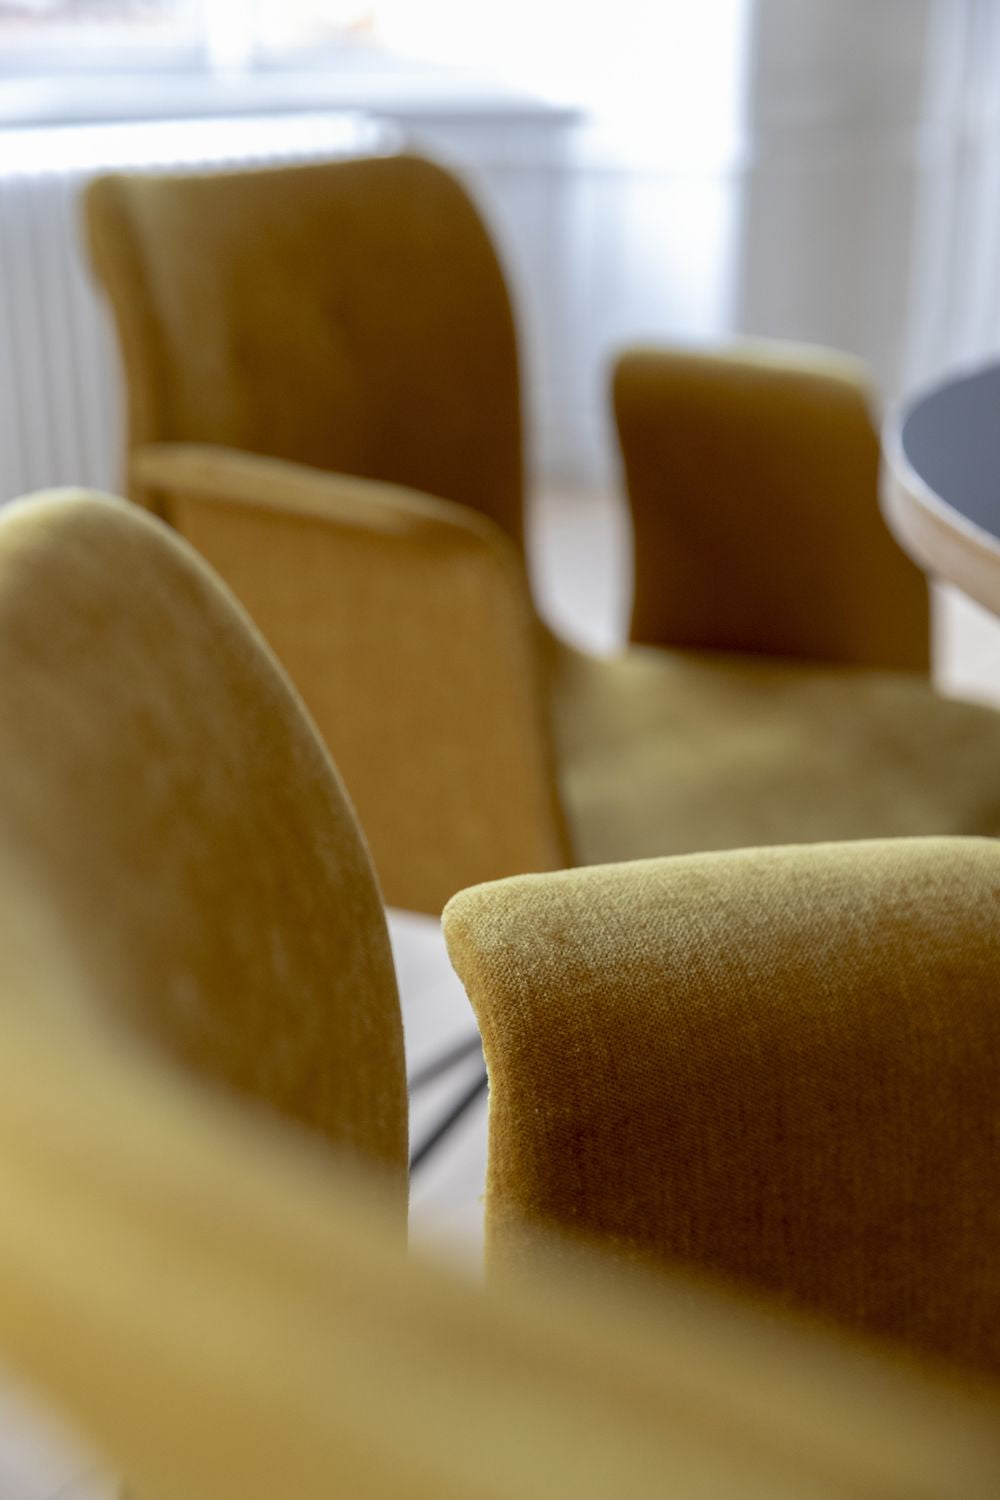 Bent Hansen Primum krzesło z podłokietlami stali nierdzewnej, skórą brandy Davos